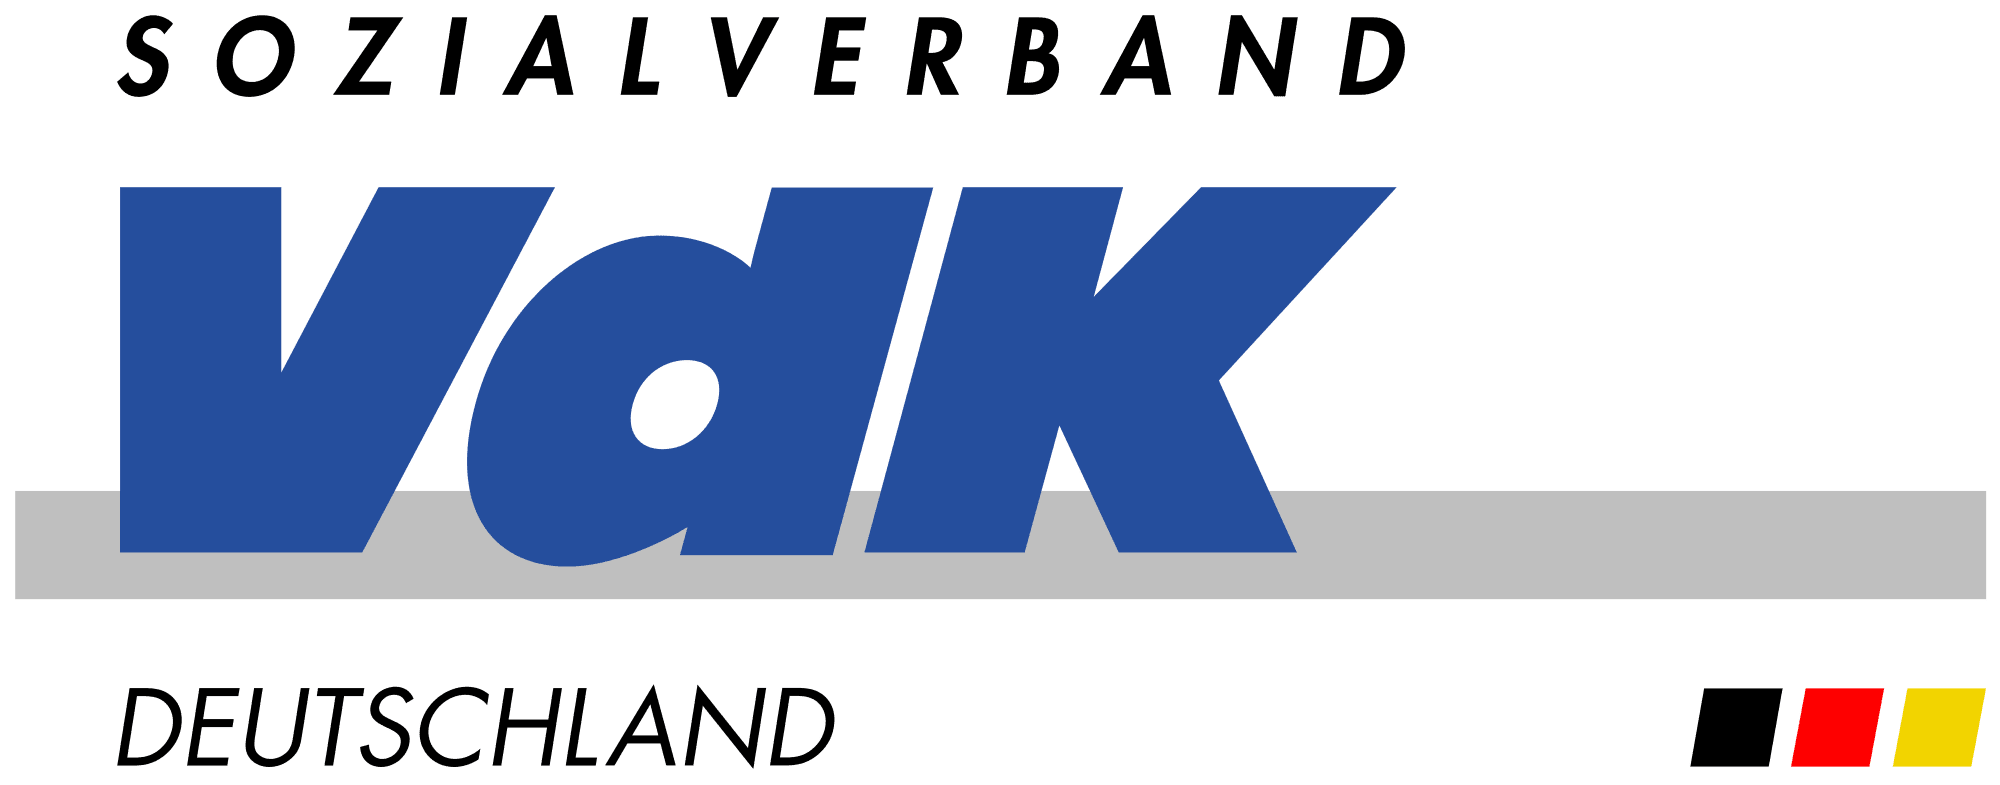 Sozialverband VdK-logo